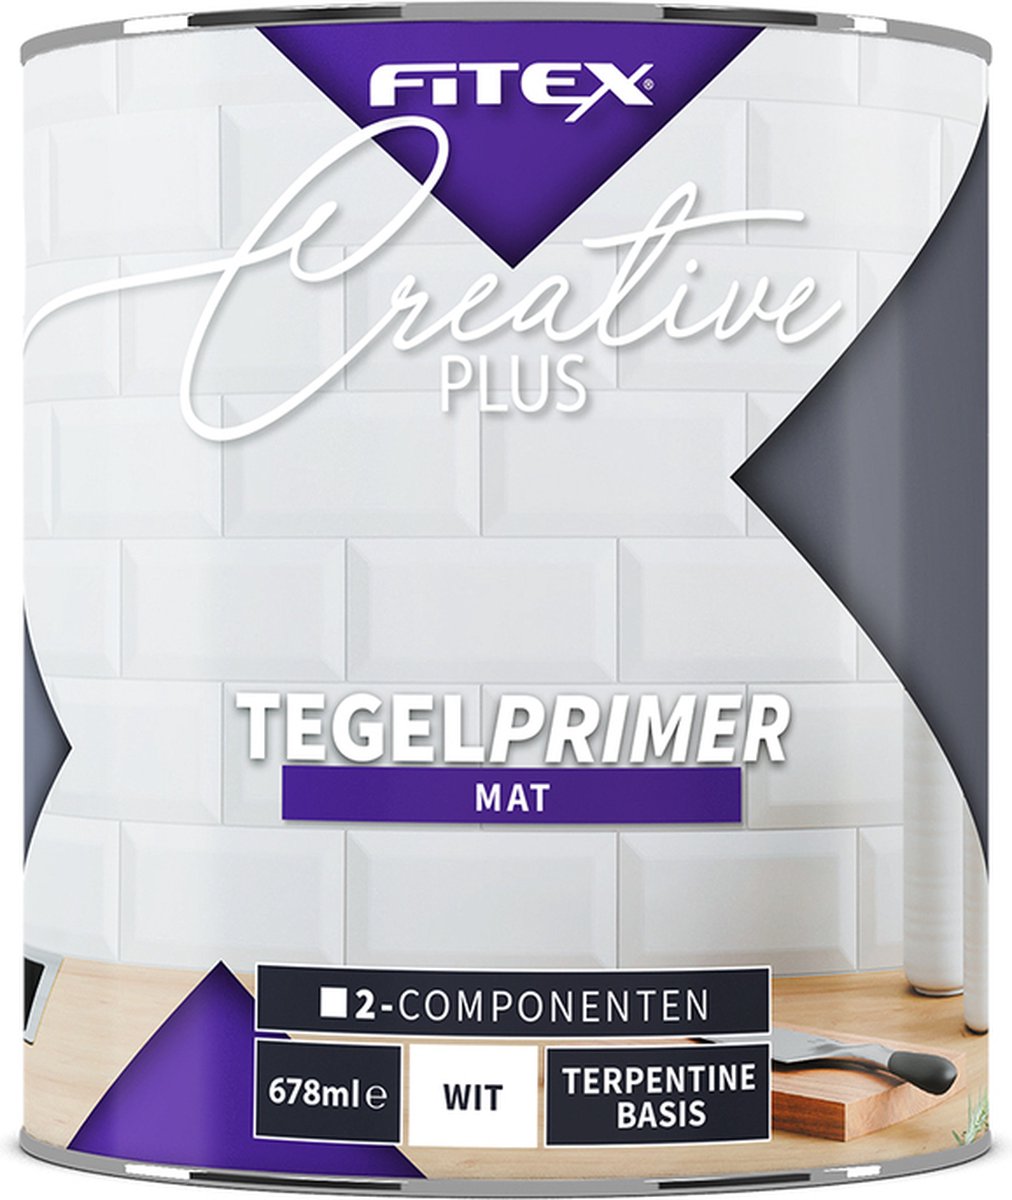 Fitex Creative+ Tegel Primer 2-Componenten - Grondverf - Dekkend - Binnen en buiten - Water basis - Mat - Grijs